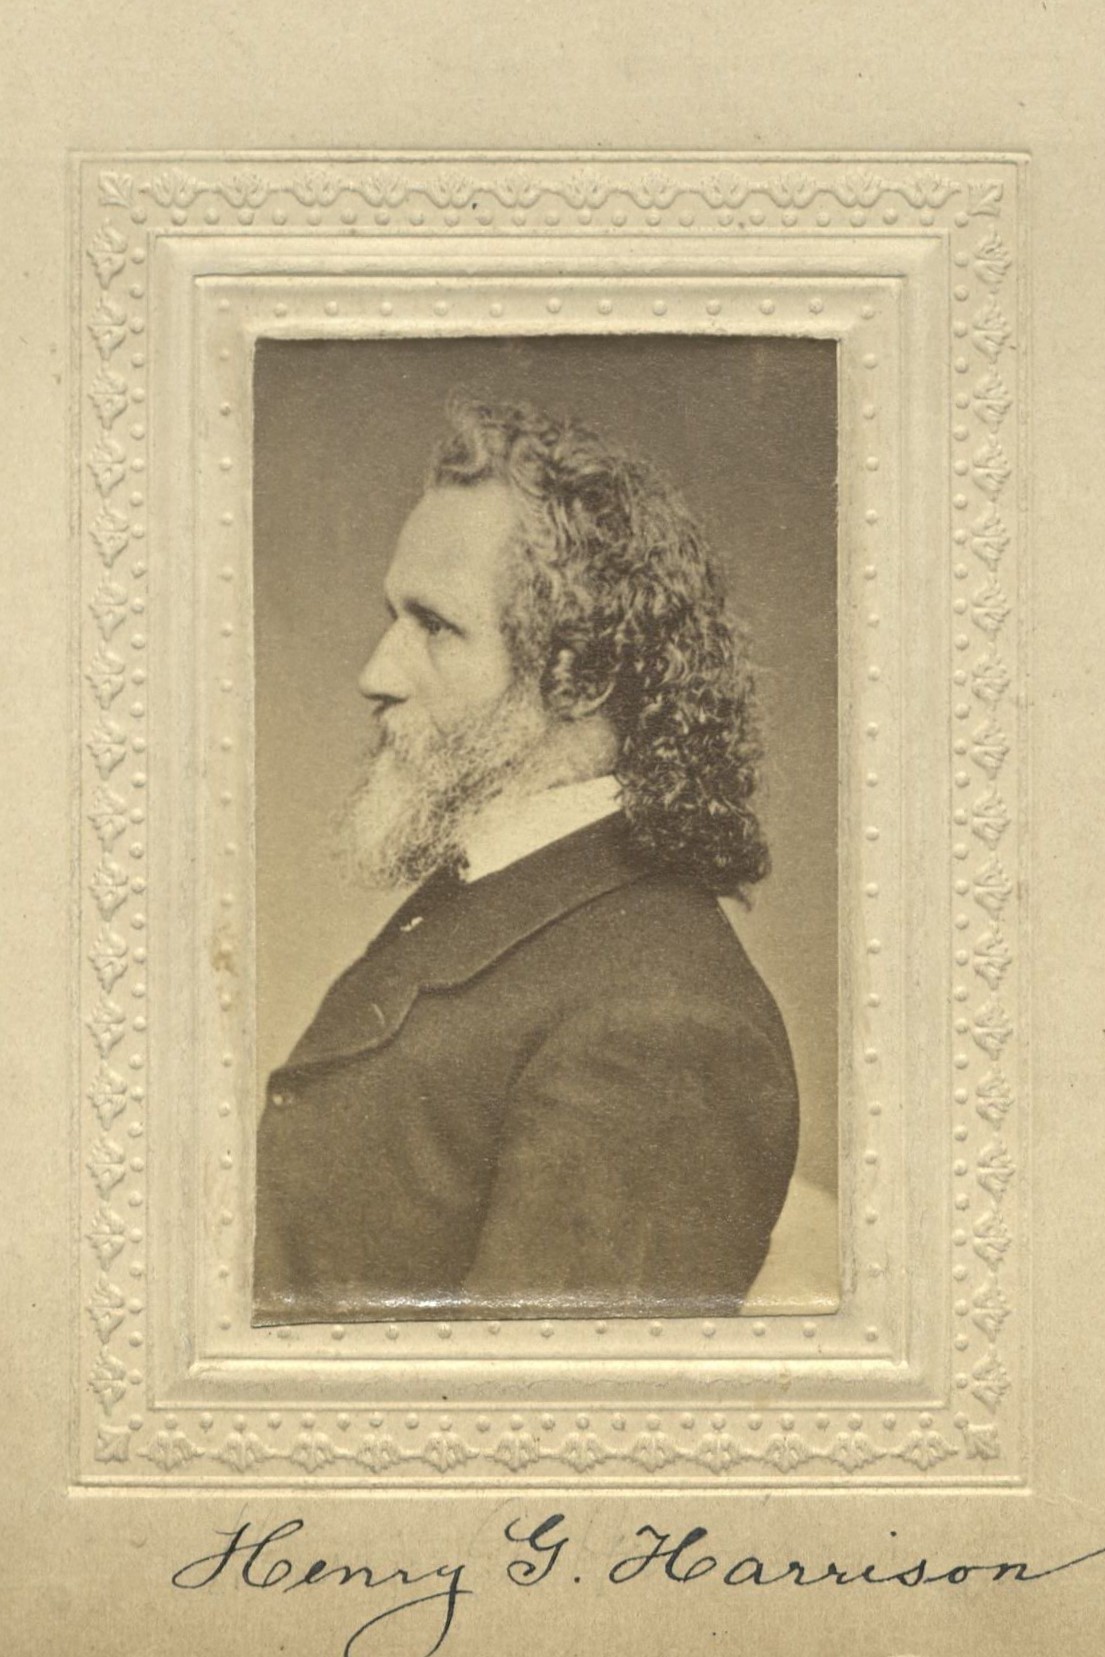 Member portrait of Henry G. Harrison